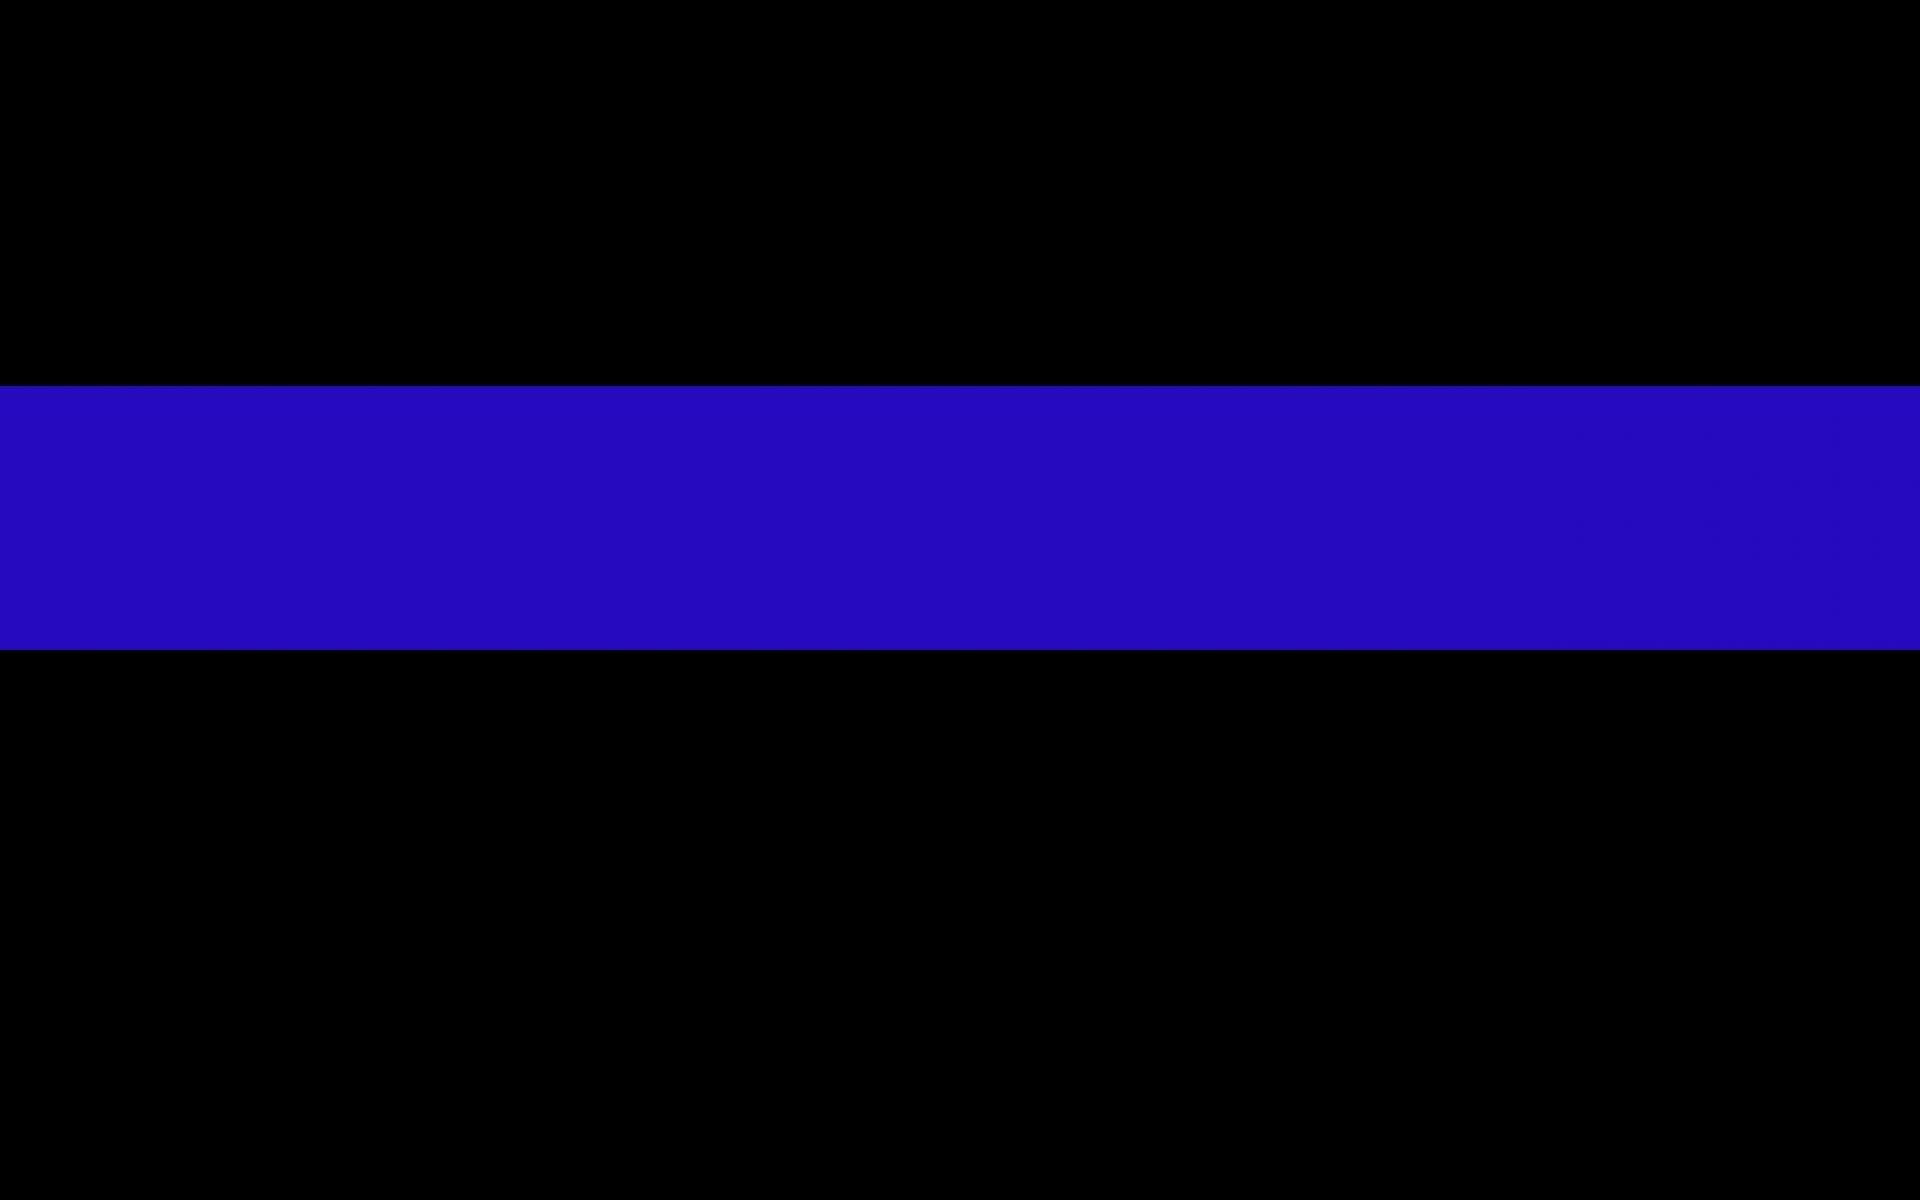 blue line law enforcement backgrounds le themed plix related high 1920x1200